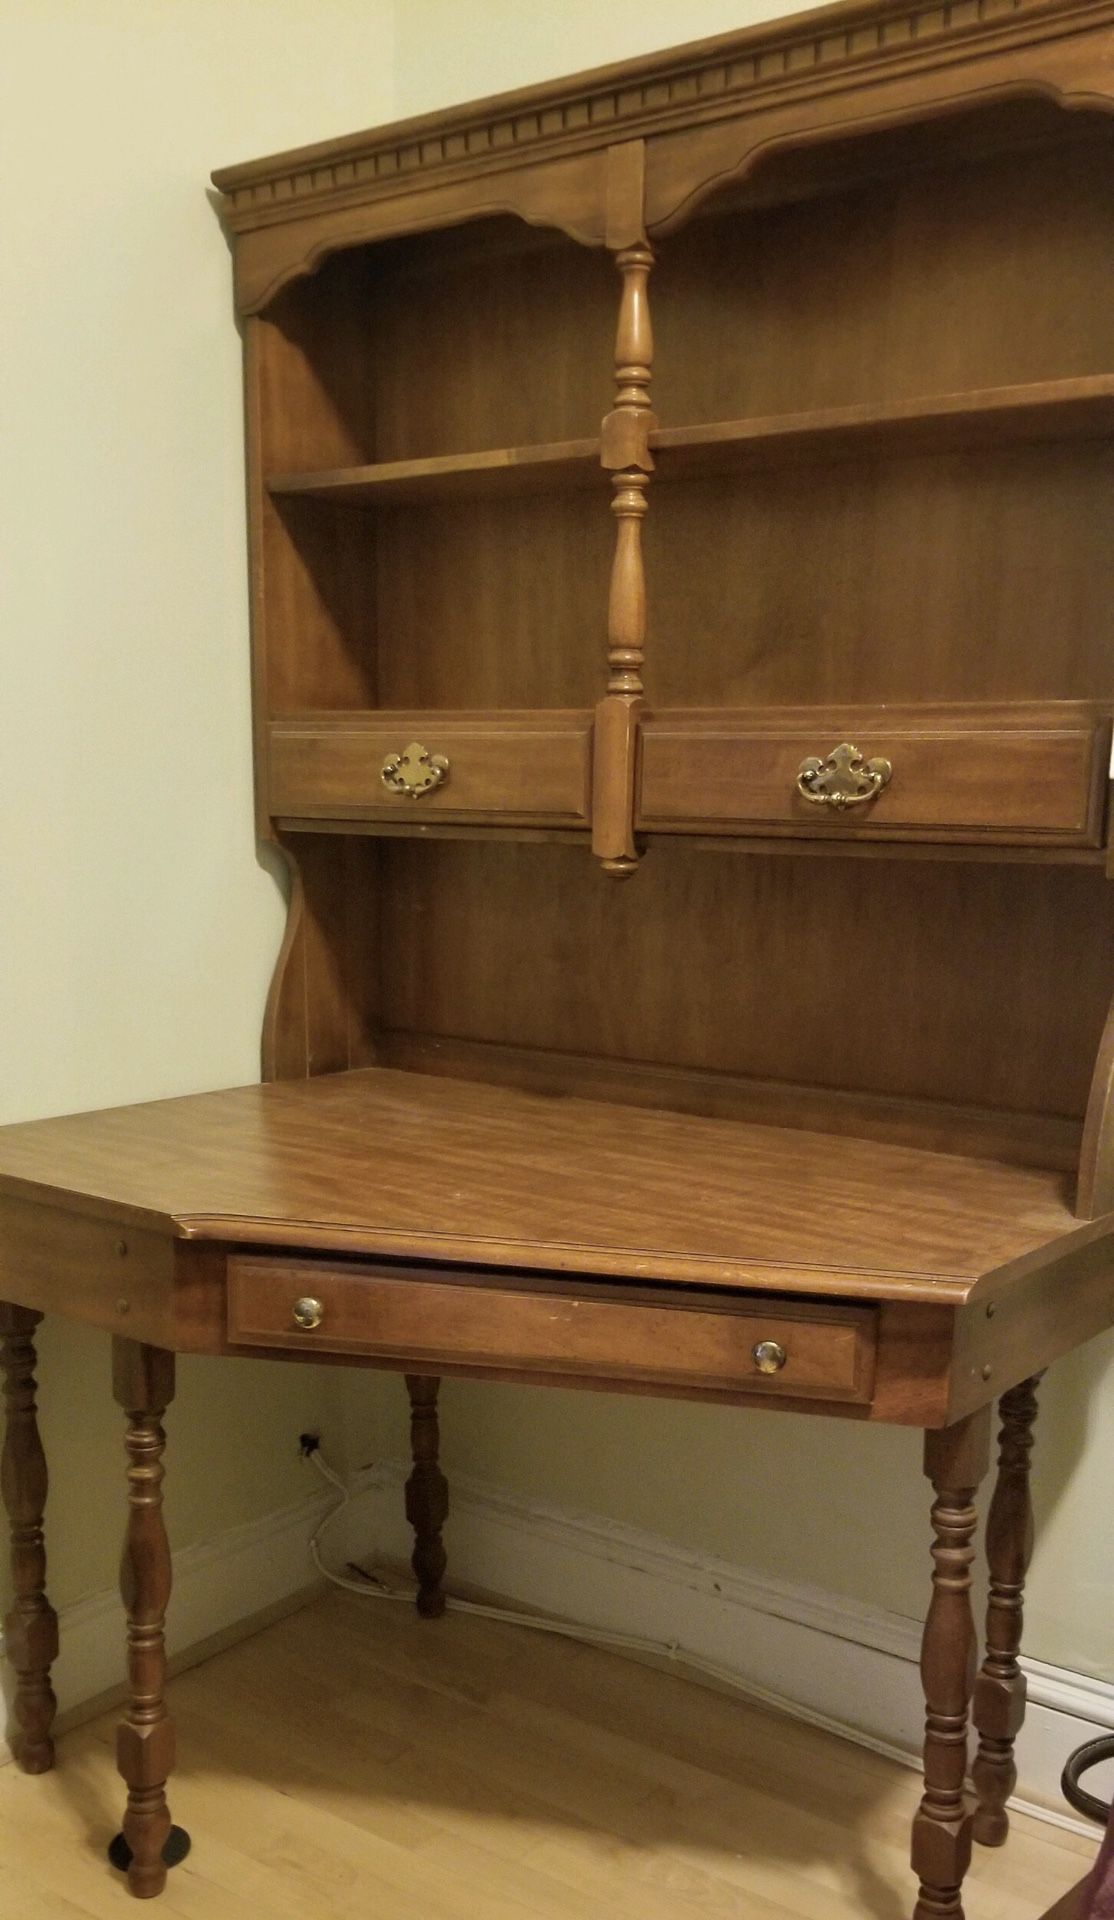 Reduced price: Antique maple corner desk